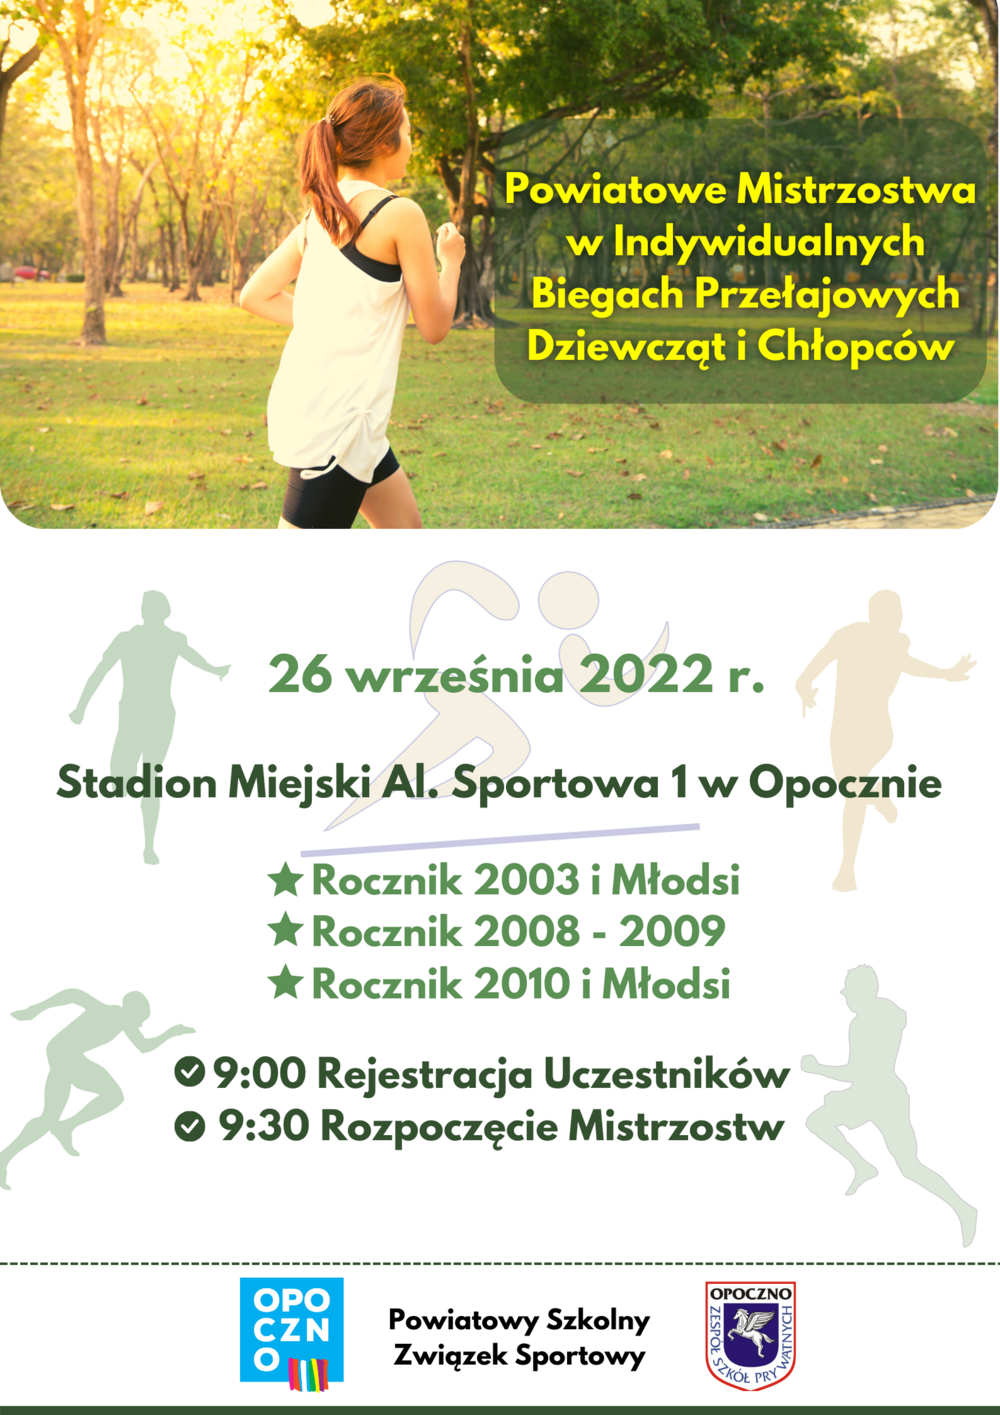 26 września 2022 r. na Stadionie Miejskim przy al. Sportowej 1 w Opocznie odbędą się Powiatowe Mistrzostwa w Indywidualnych Biegach Przełajowych Dziewcząt i Chłopców.